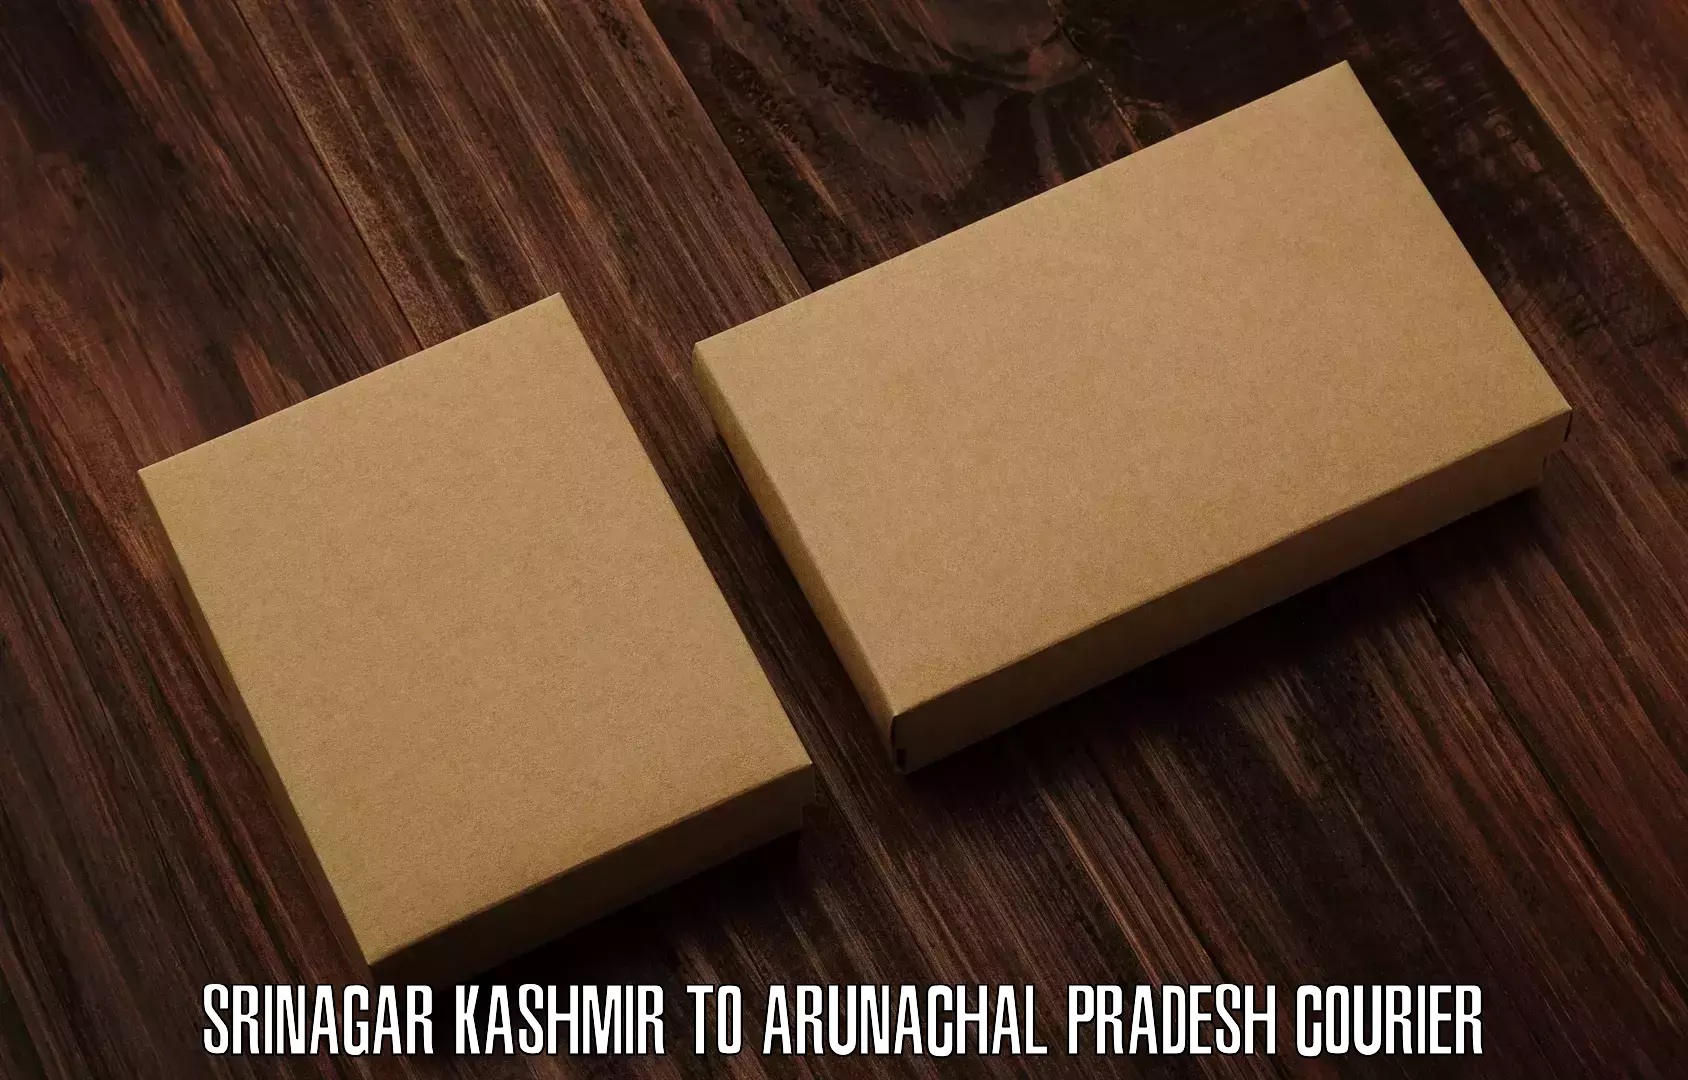 Next day courier Srinagar Kashmir to Arunachal Pradesh